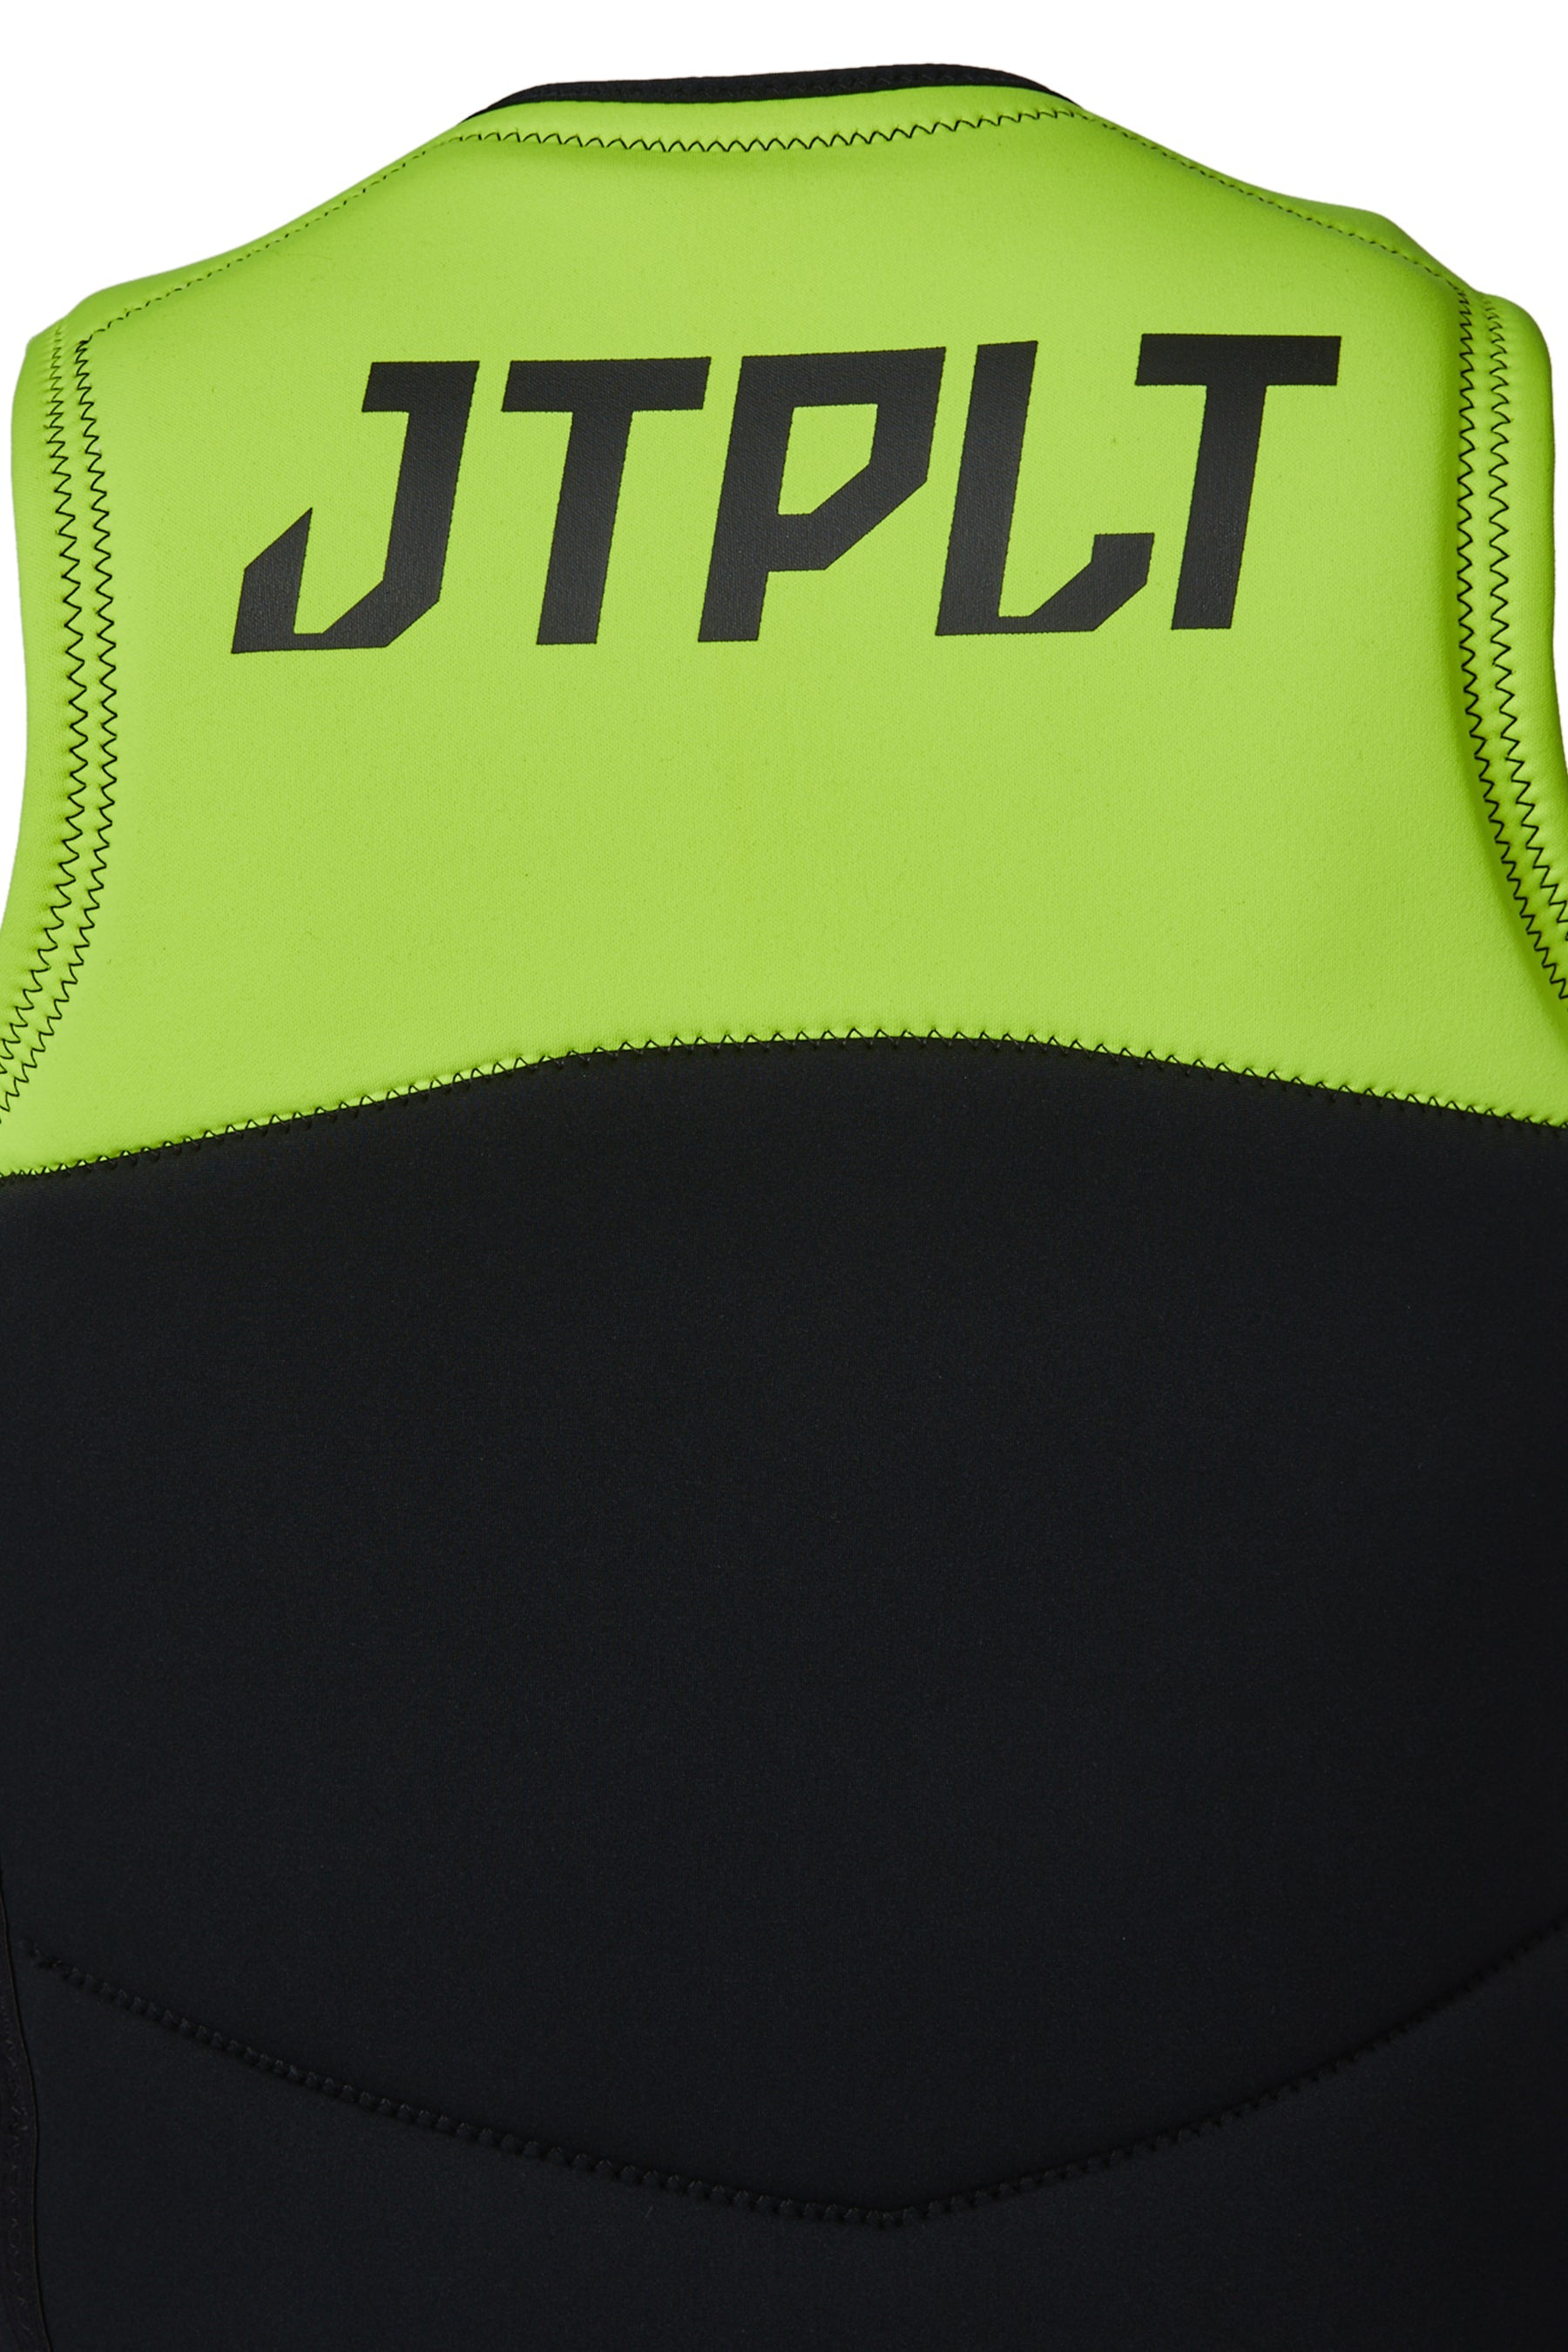 Jetpilot Rx Vault Mens F/E Neo Life Jacket Yellow 9